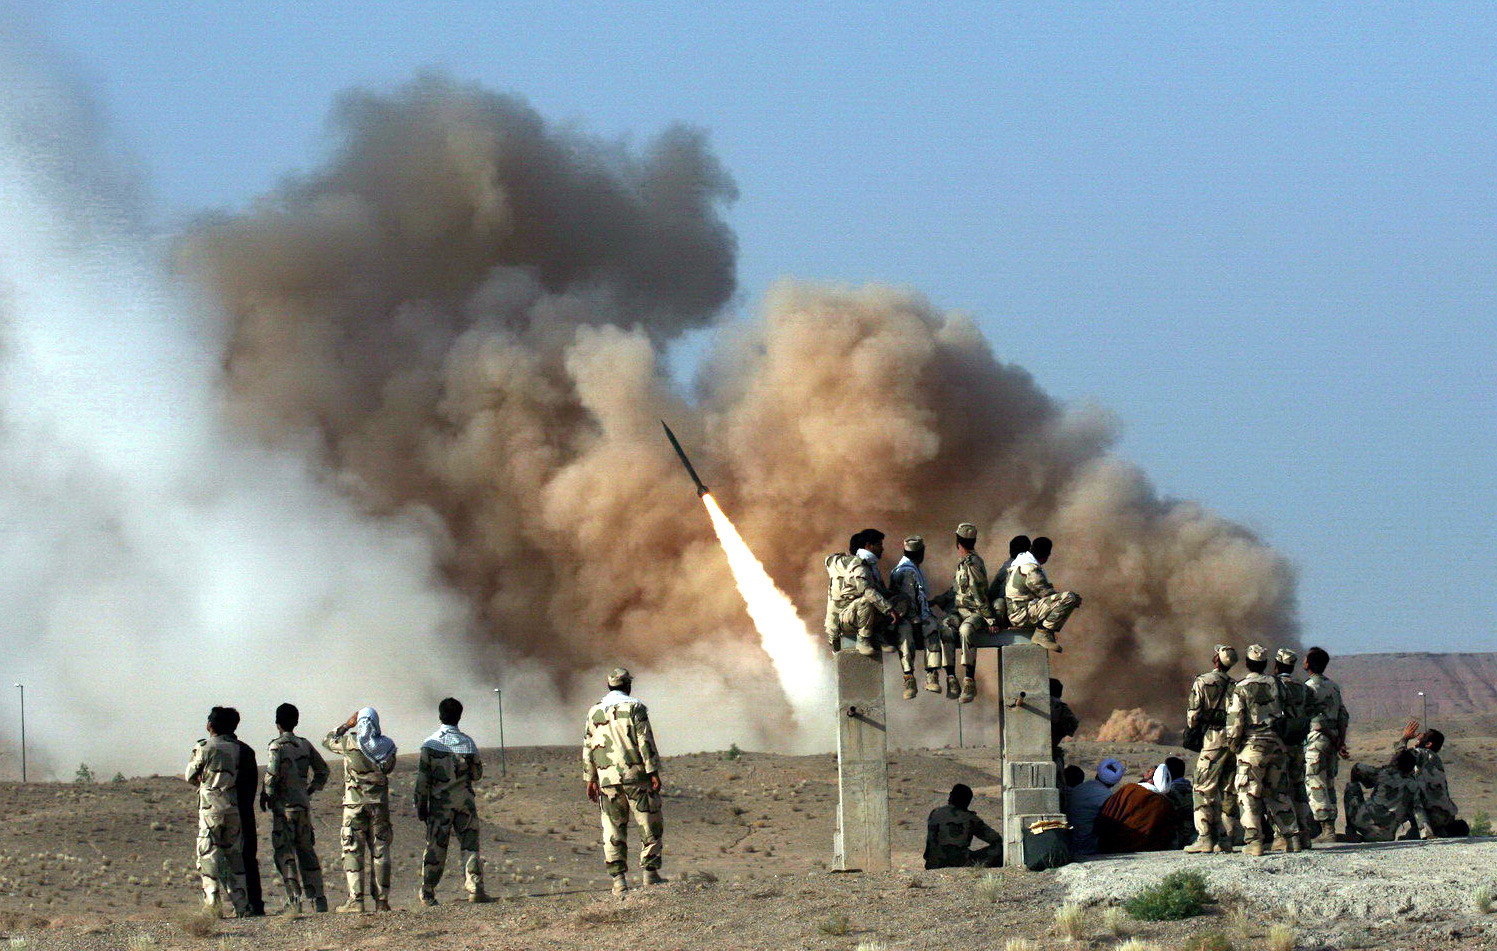 Imagen captada durante un entrenamiento militar iraní, antes de ataque a bases estadounidenses. (Foto Prensa Libre: EFE)